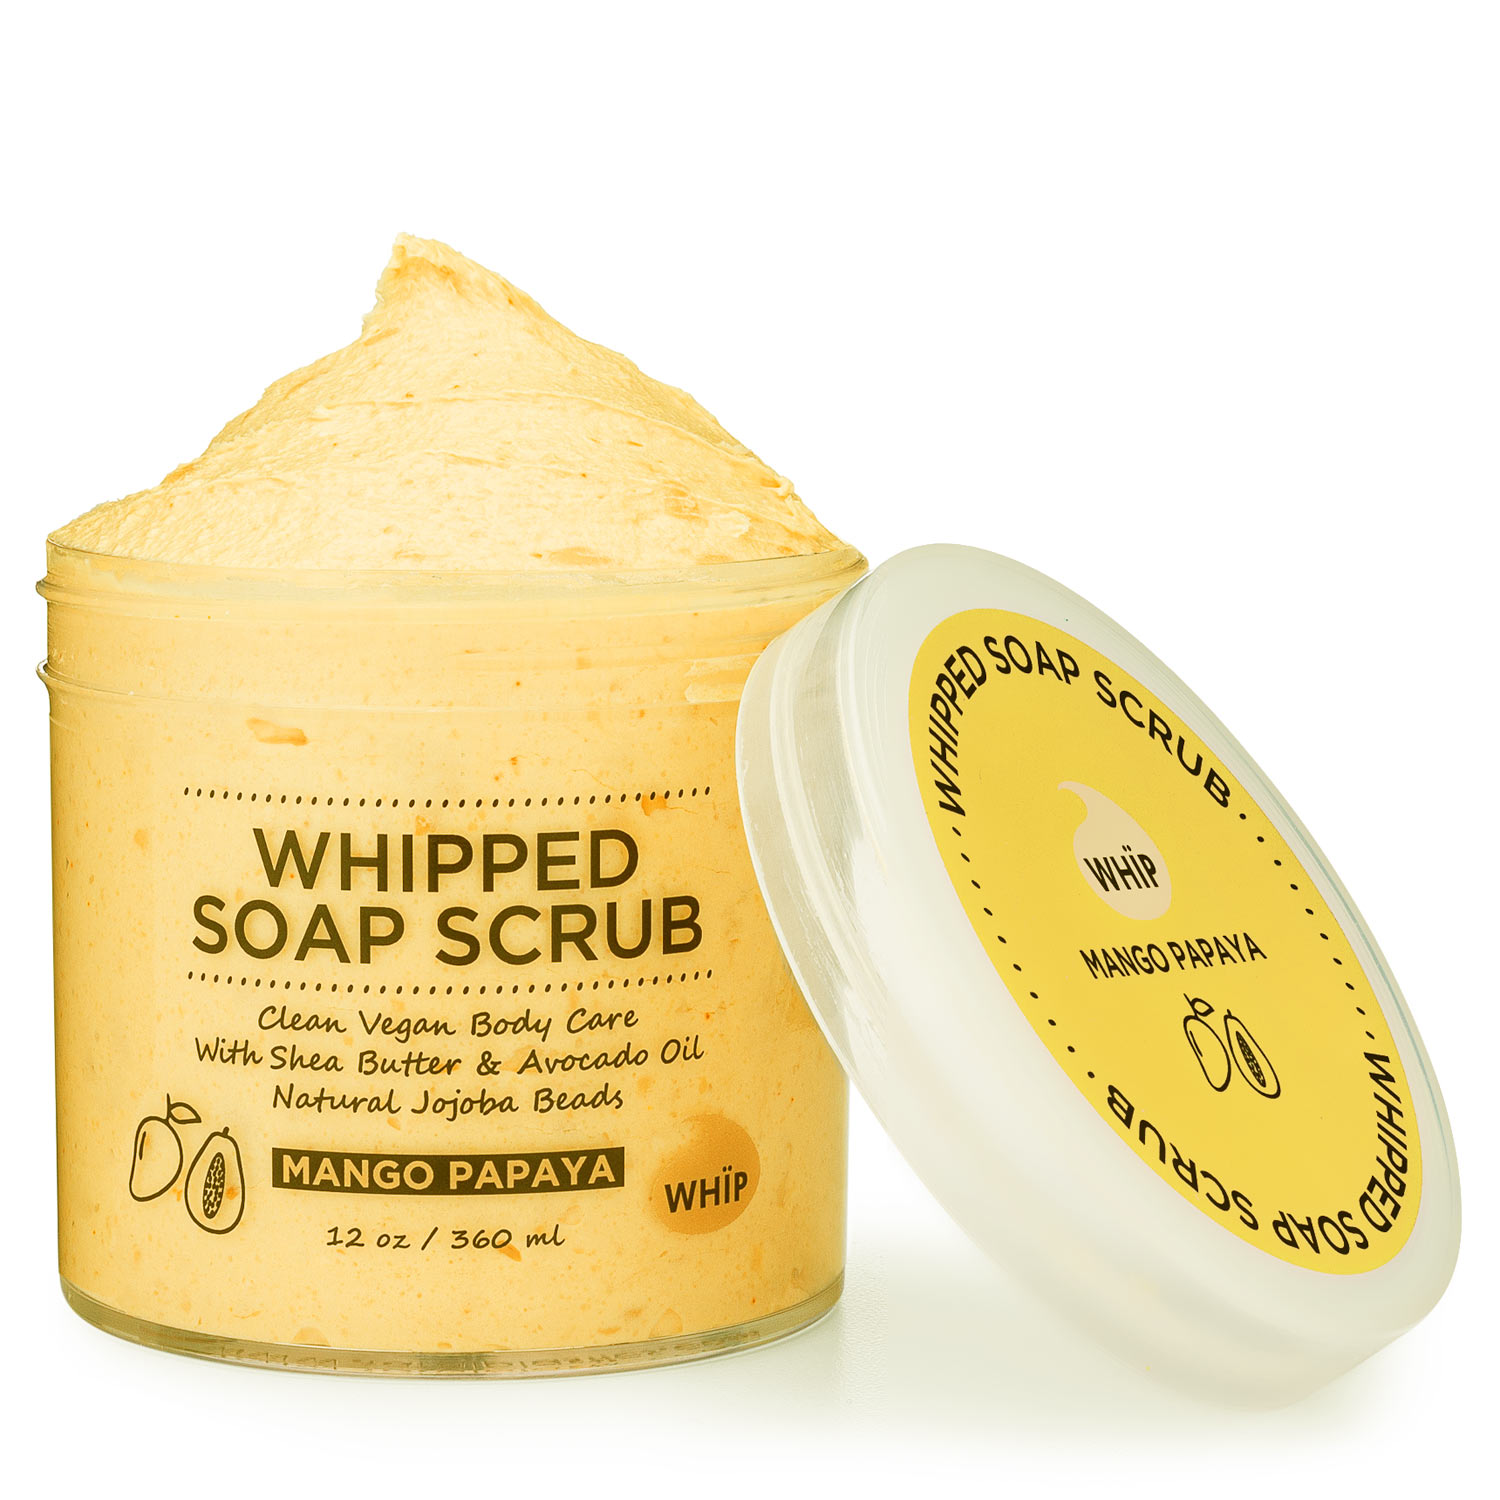 Whipped-Soap-Scrub---Mango-Papaya-WHÏP